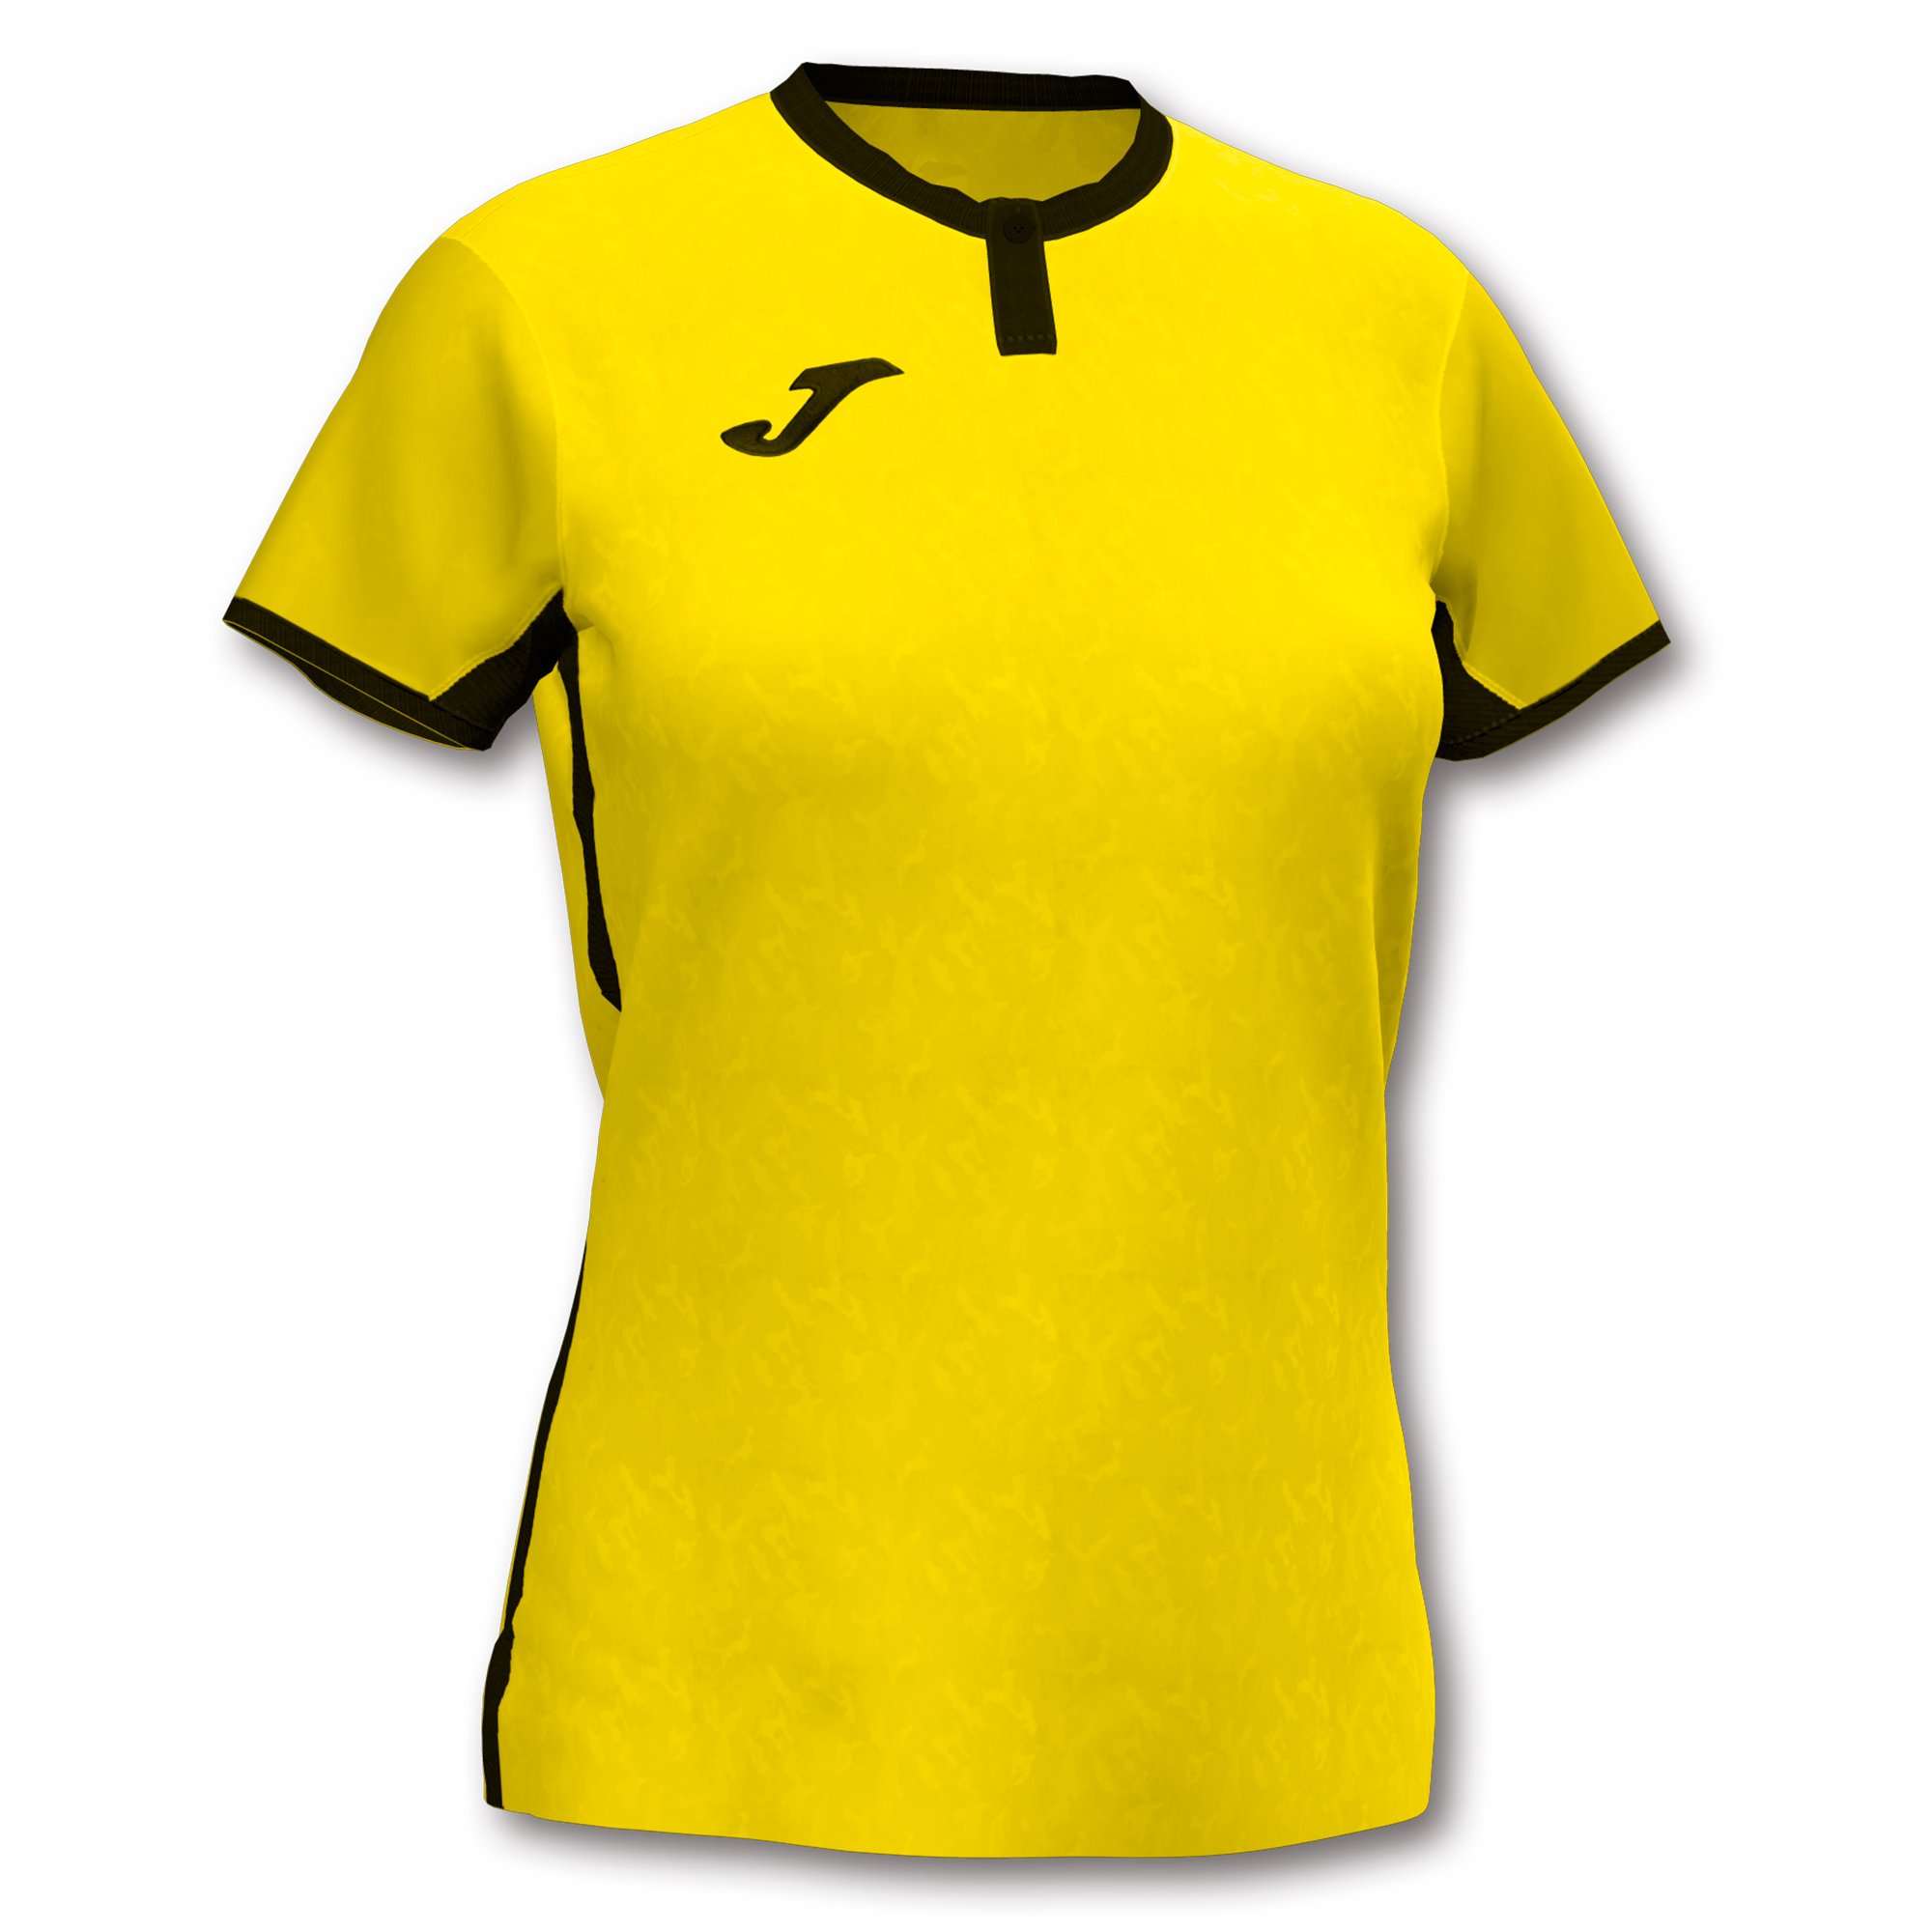 Волейбольная футболка женская Joma TOLETUM II Желтый/Черный